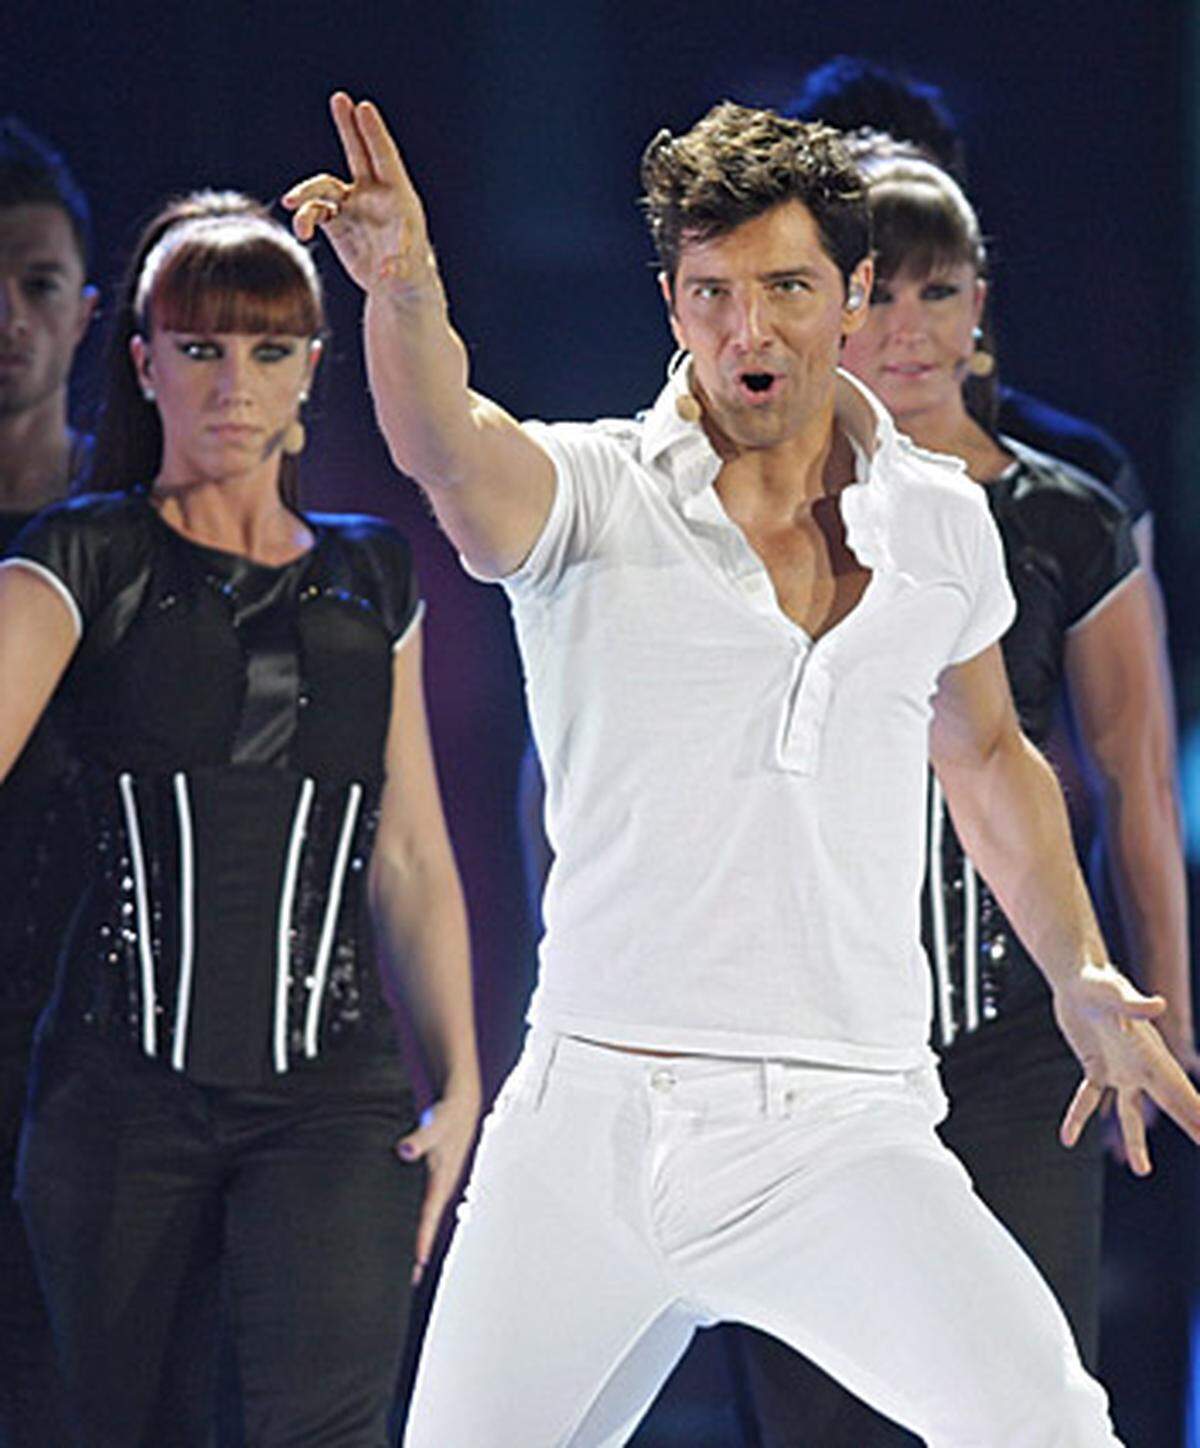 Auch Griechenland bot mit dem Sänger Sakis Rouvas ("This Is Our Night") soliden Mainstream-Pop.